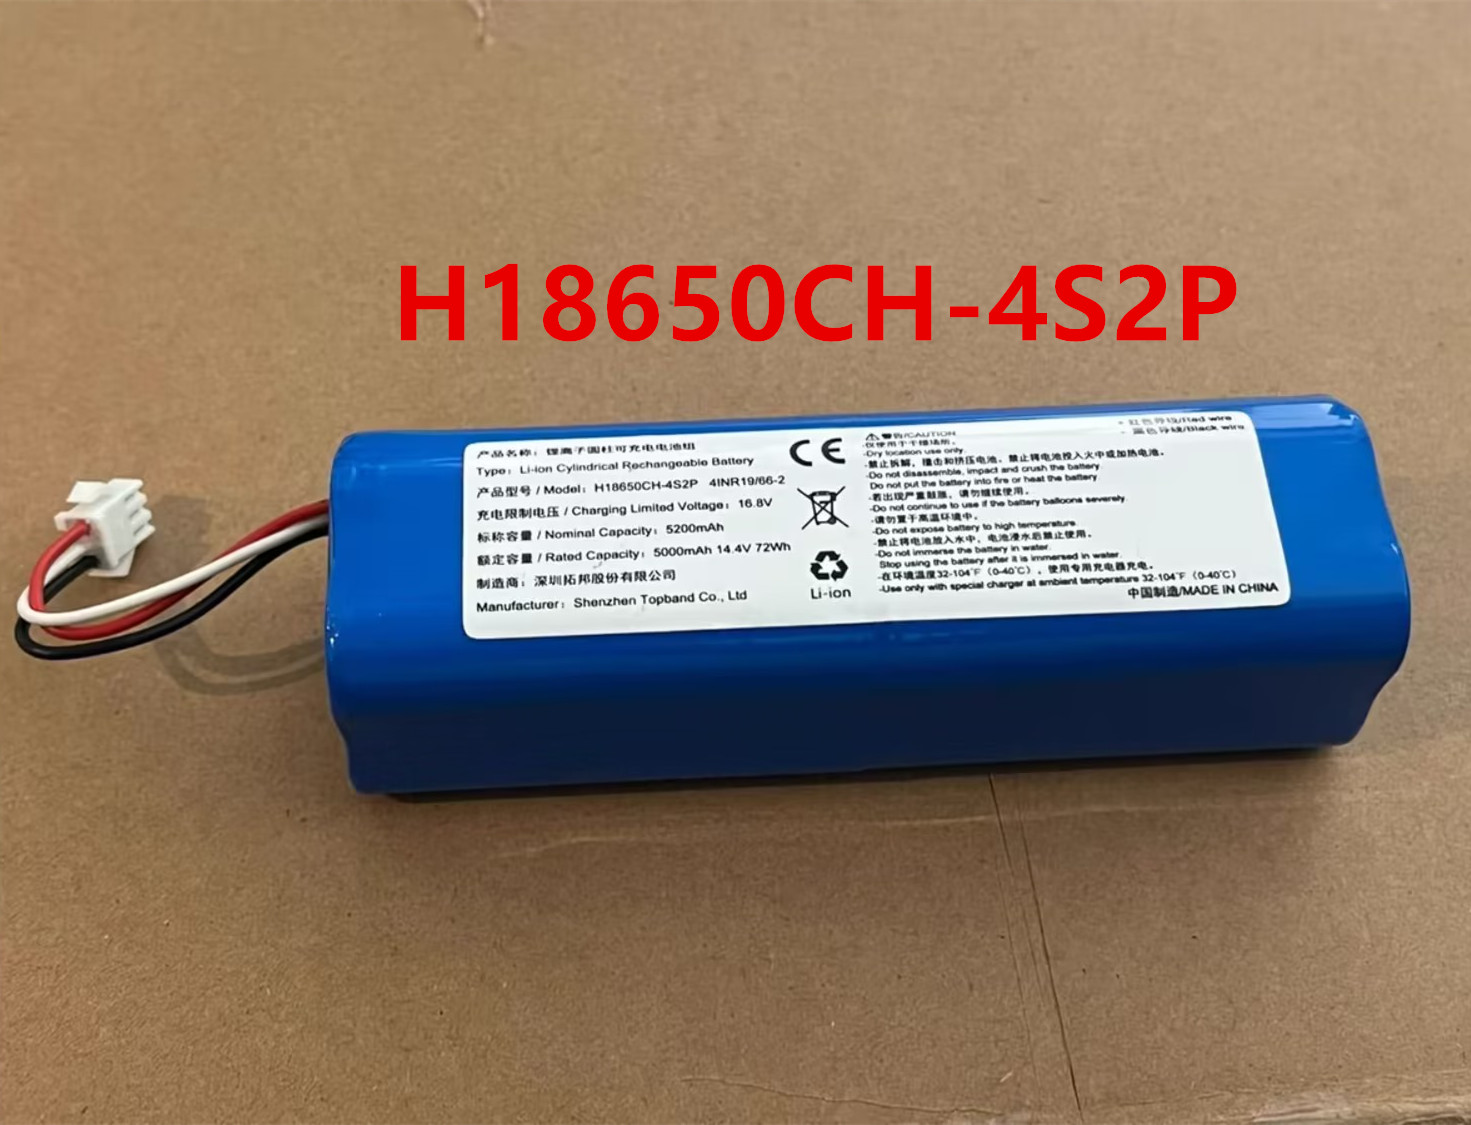 H18650CH-4S2P 锂离子圆柱可充电电池组 5000mAh 14.4V 72Wh 5200